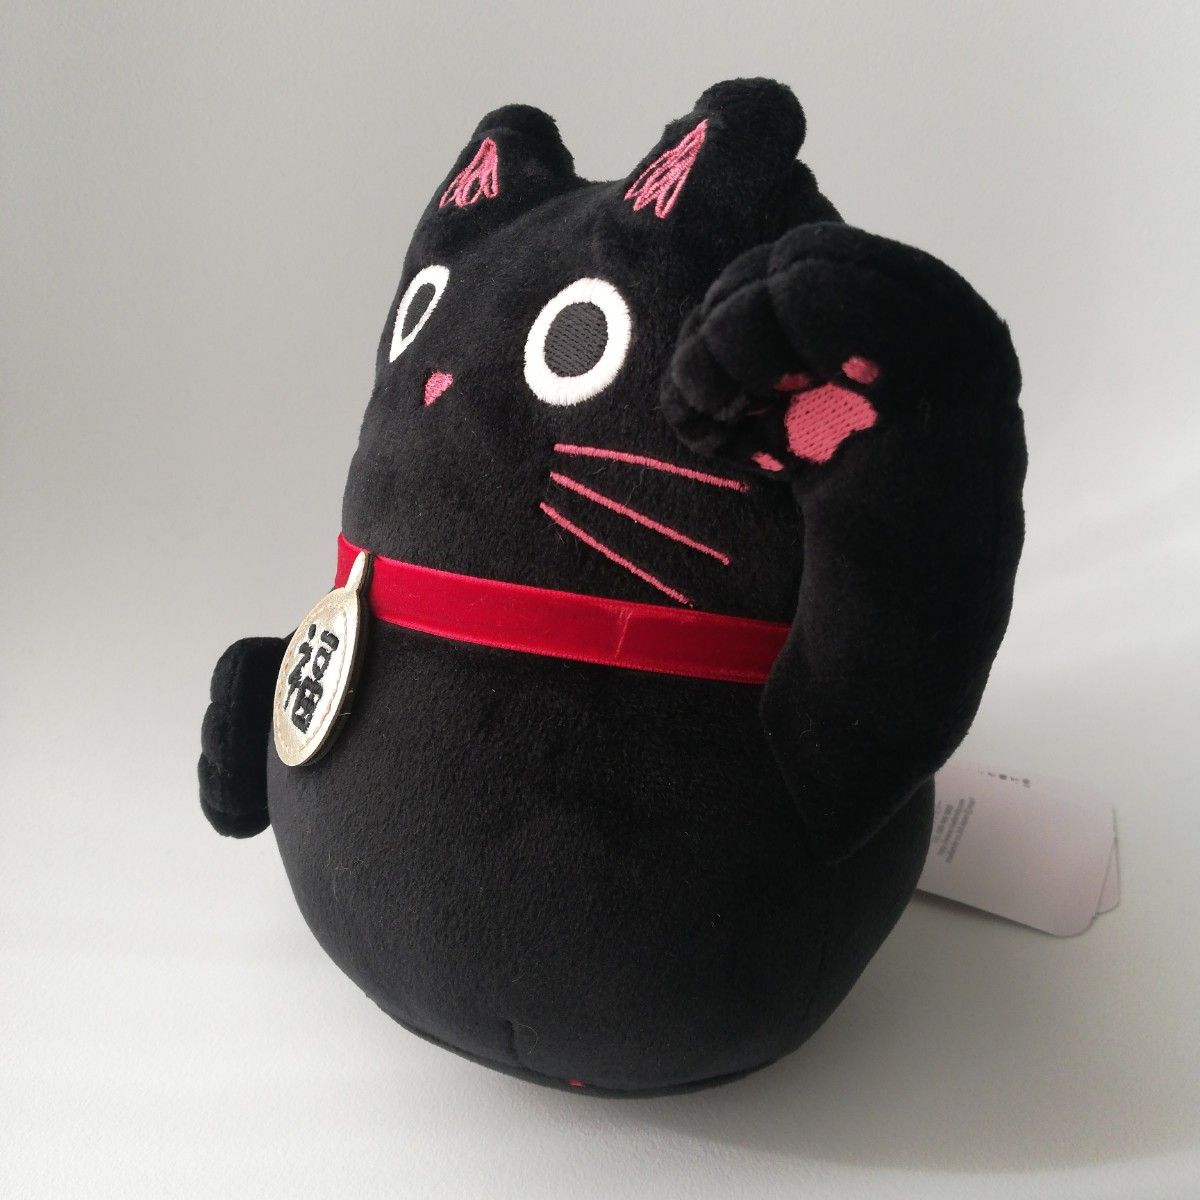 招き猫　まねき猫　福　マスコット　ぬいぐるみ　人形　黒　黒猫　猫　ねこ　ネコ　幸福　幸運　金運　ラッキー　運気アップ　運気　運